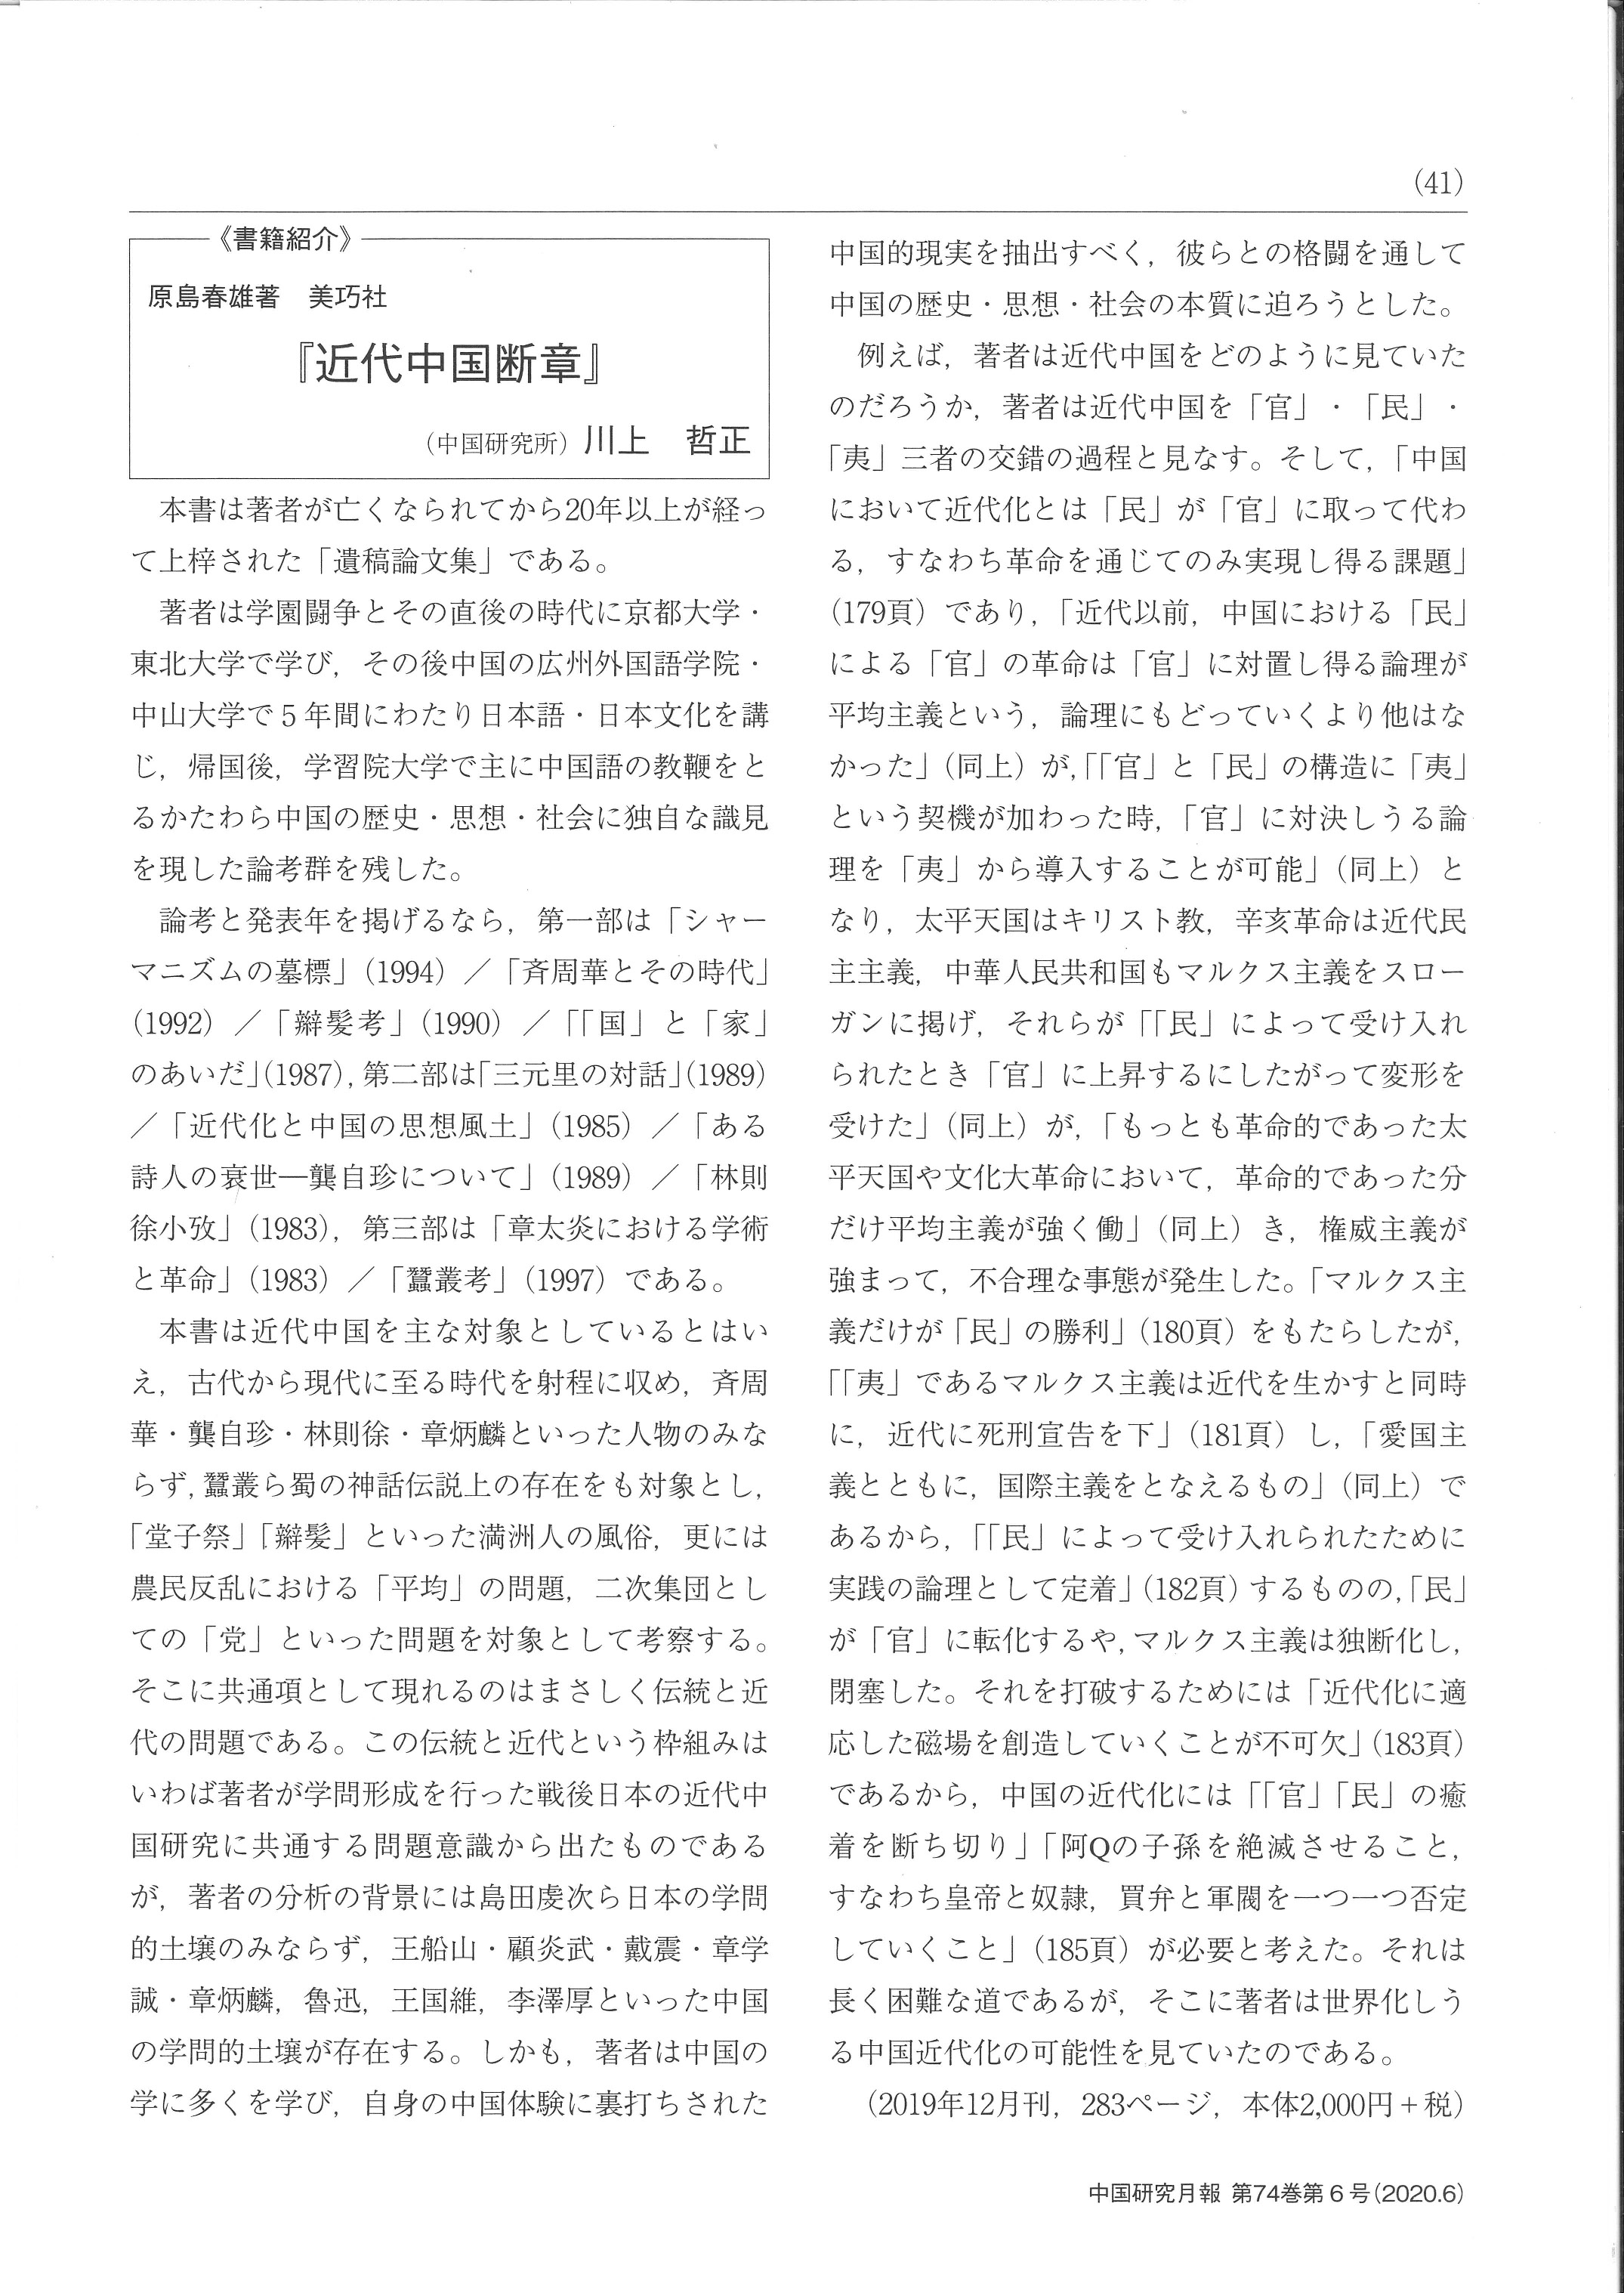 中国研究月報掲載「書評および著者（原島春雄）紹介」